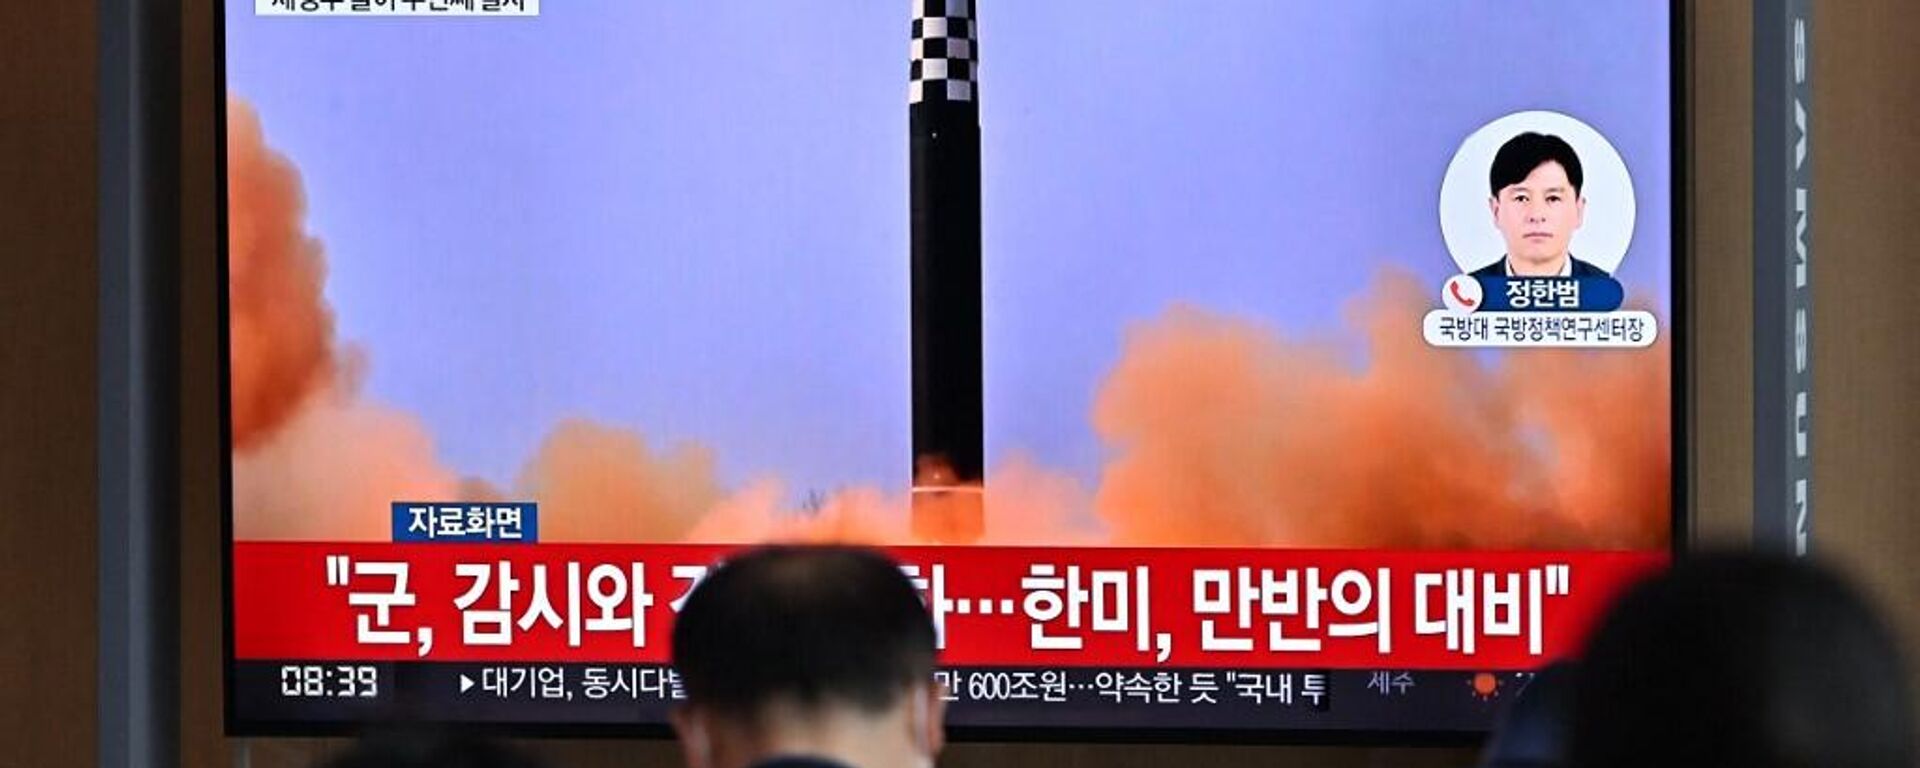 La gente ve una transmisión de una prueba con misiles en Corea del Norte - Sputnik Mundo, 1920, 10.10.2022